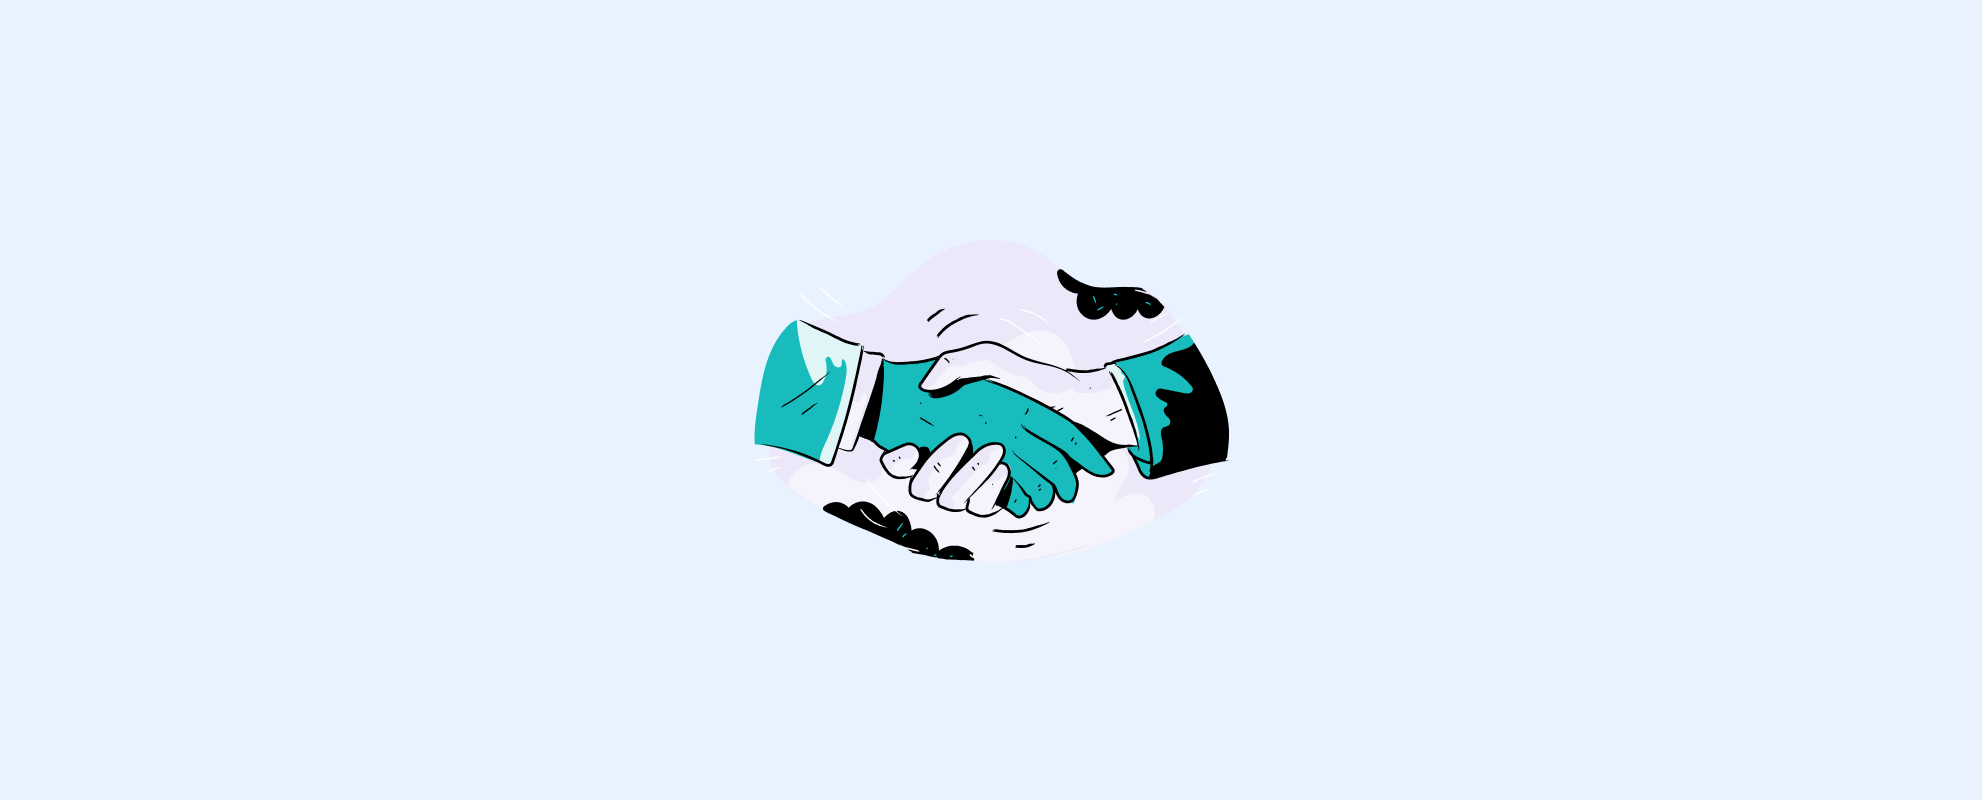 ilustração de aperto de mãos numa demissão em comum acordo